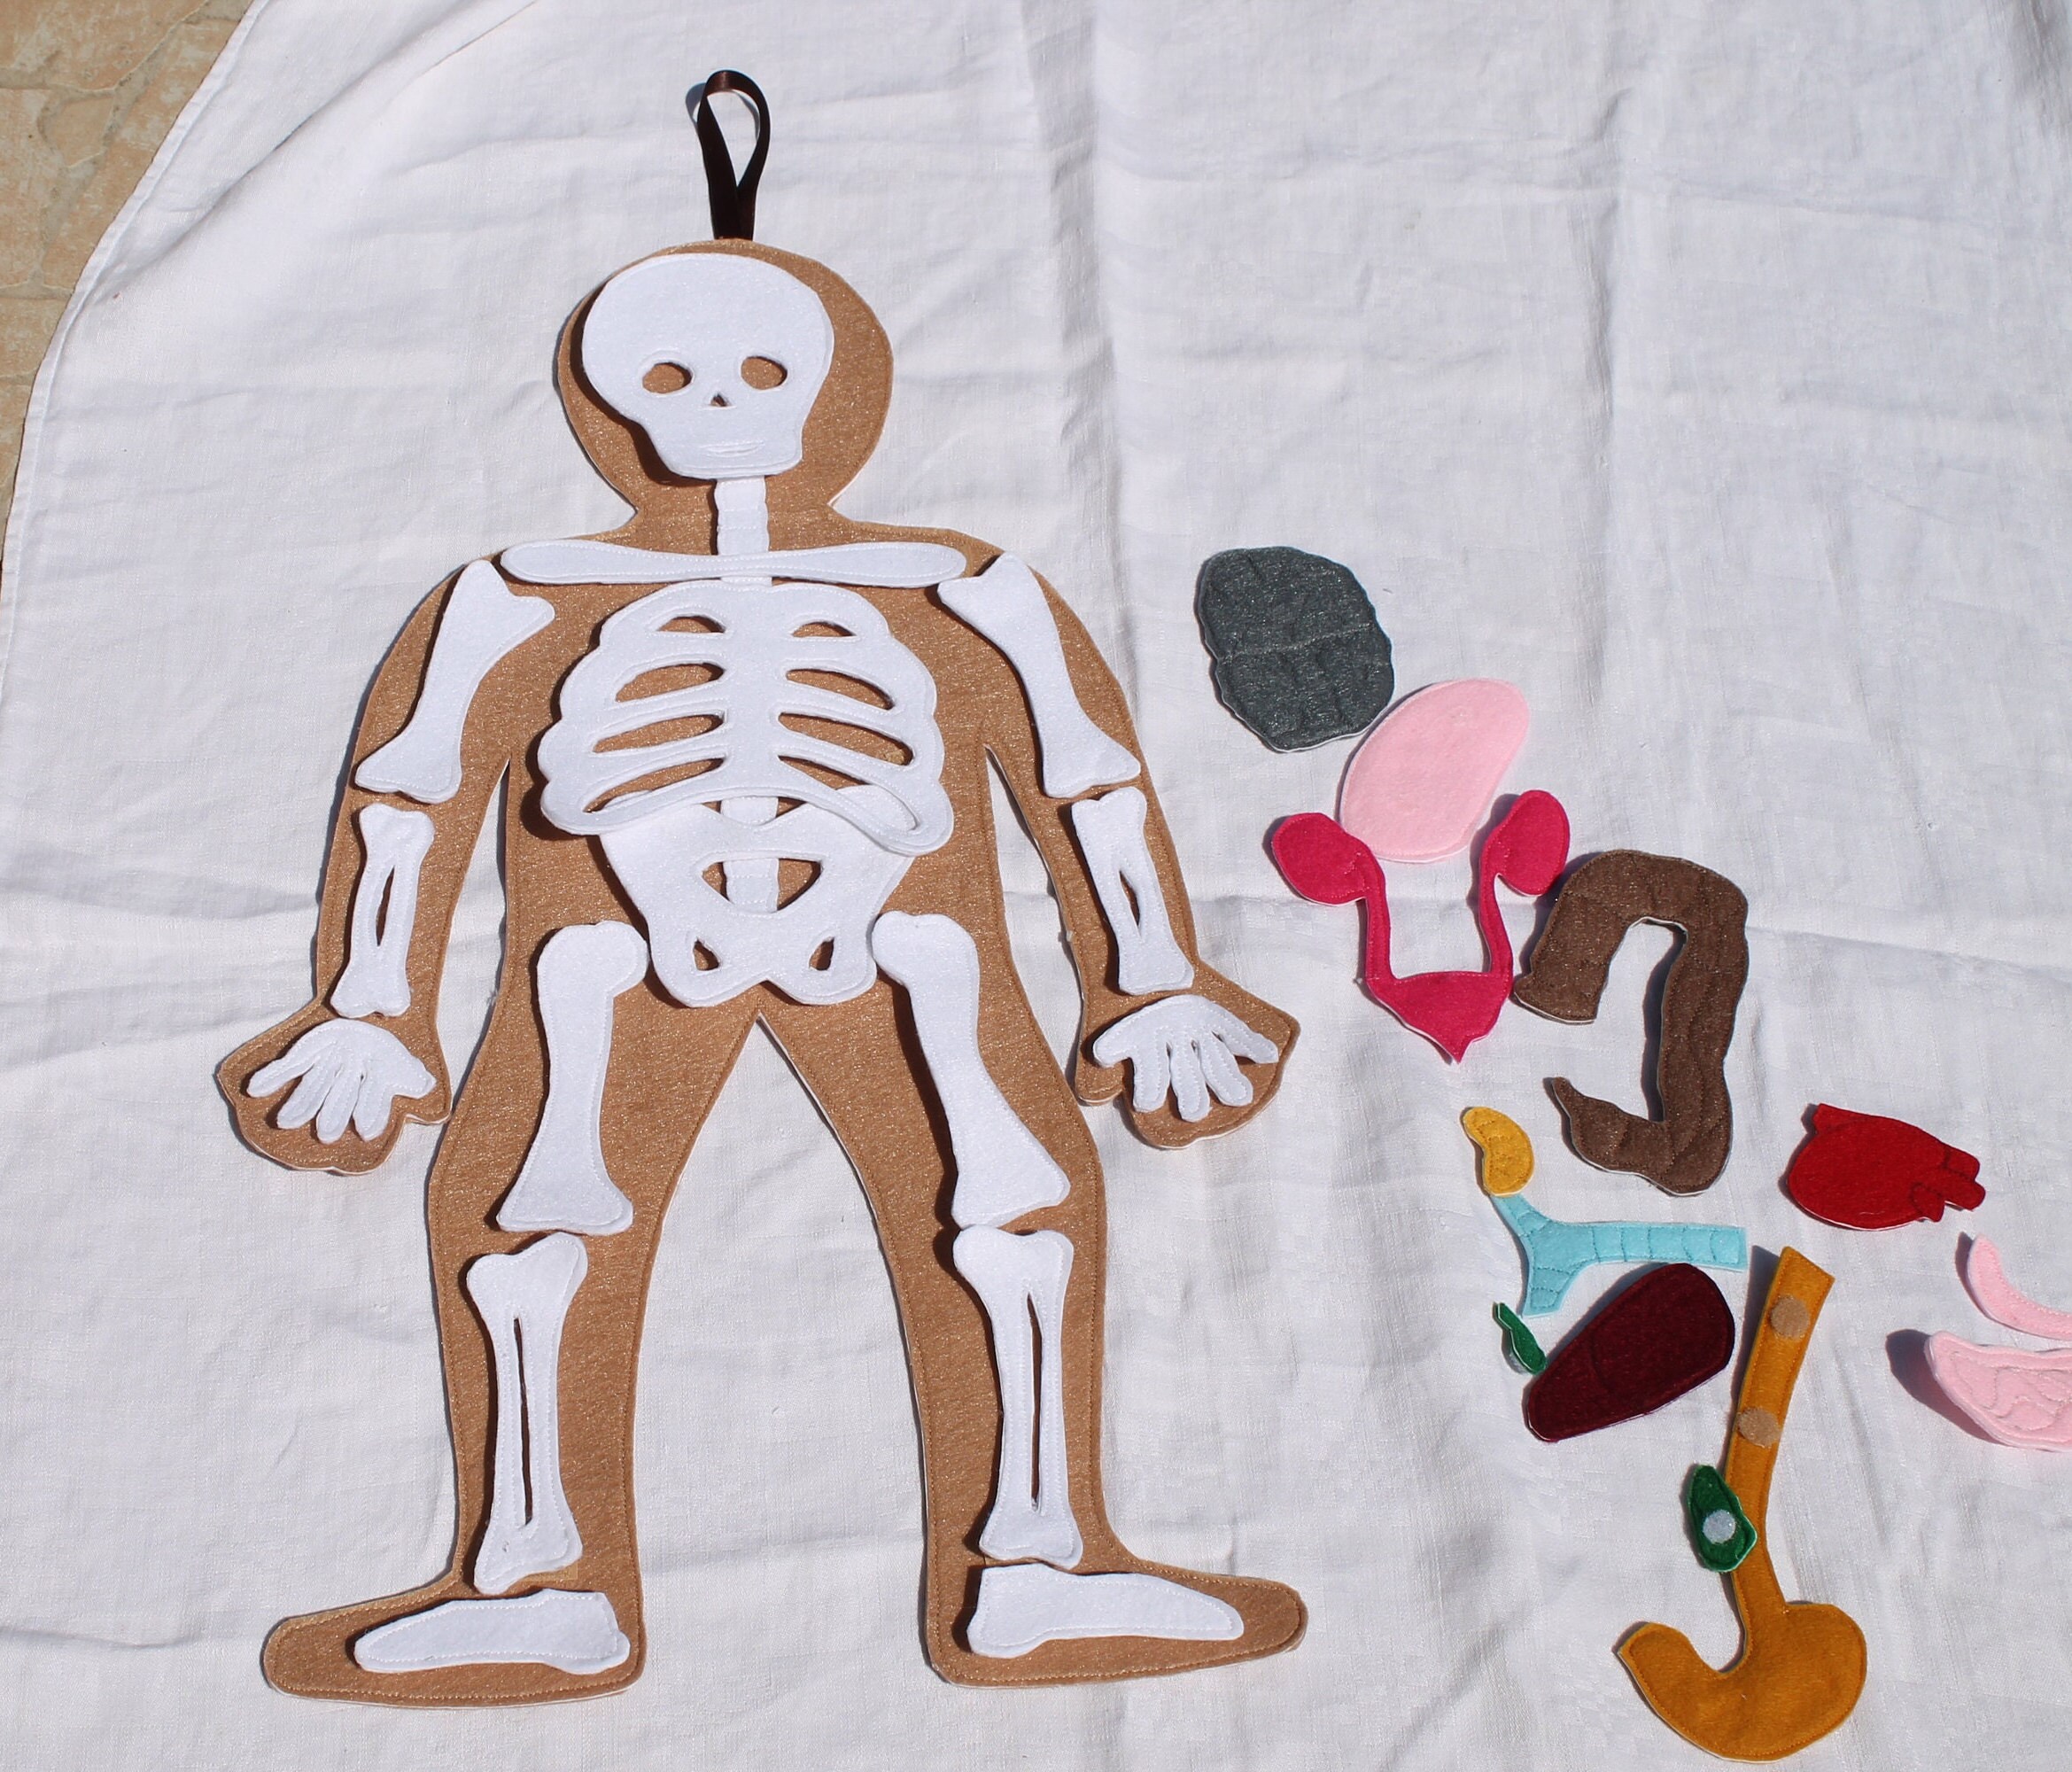 3 Pièces/ensemble Lumineux Drôle Squelette Humain Modèle Crâne Corps  Complet Mini Figure Jouets Halloween Cadeau Pour Enfants Adulte Fête  Ornement